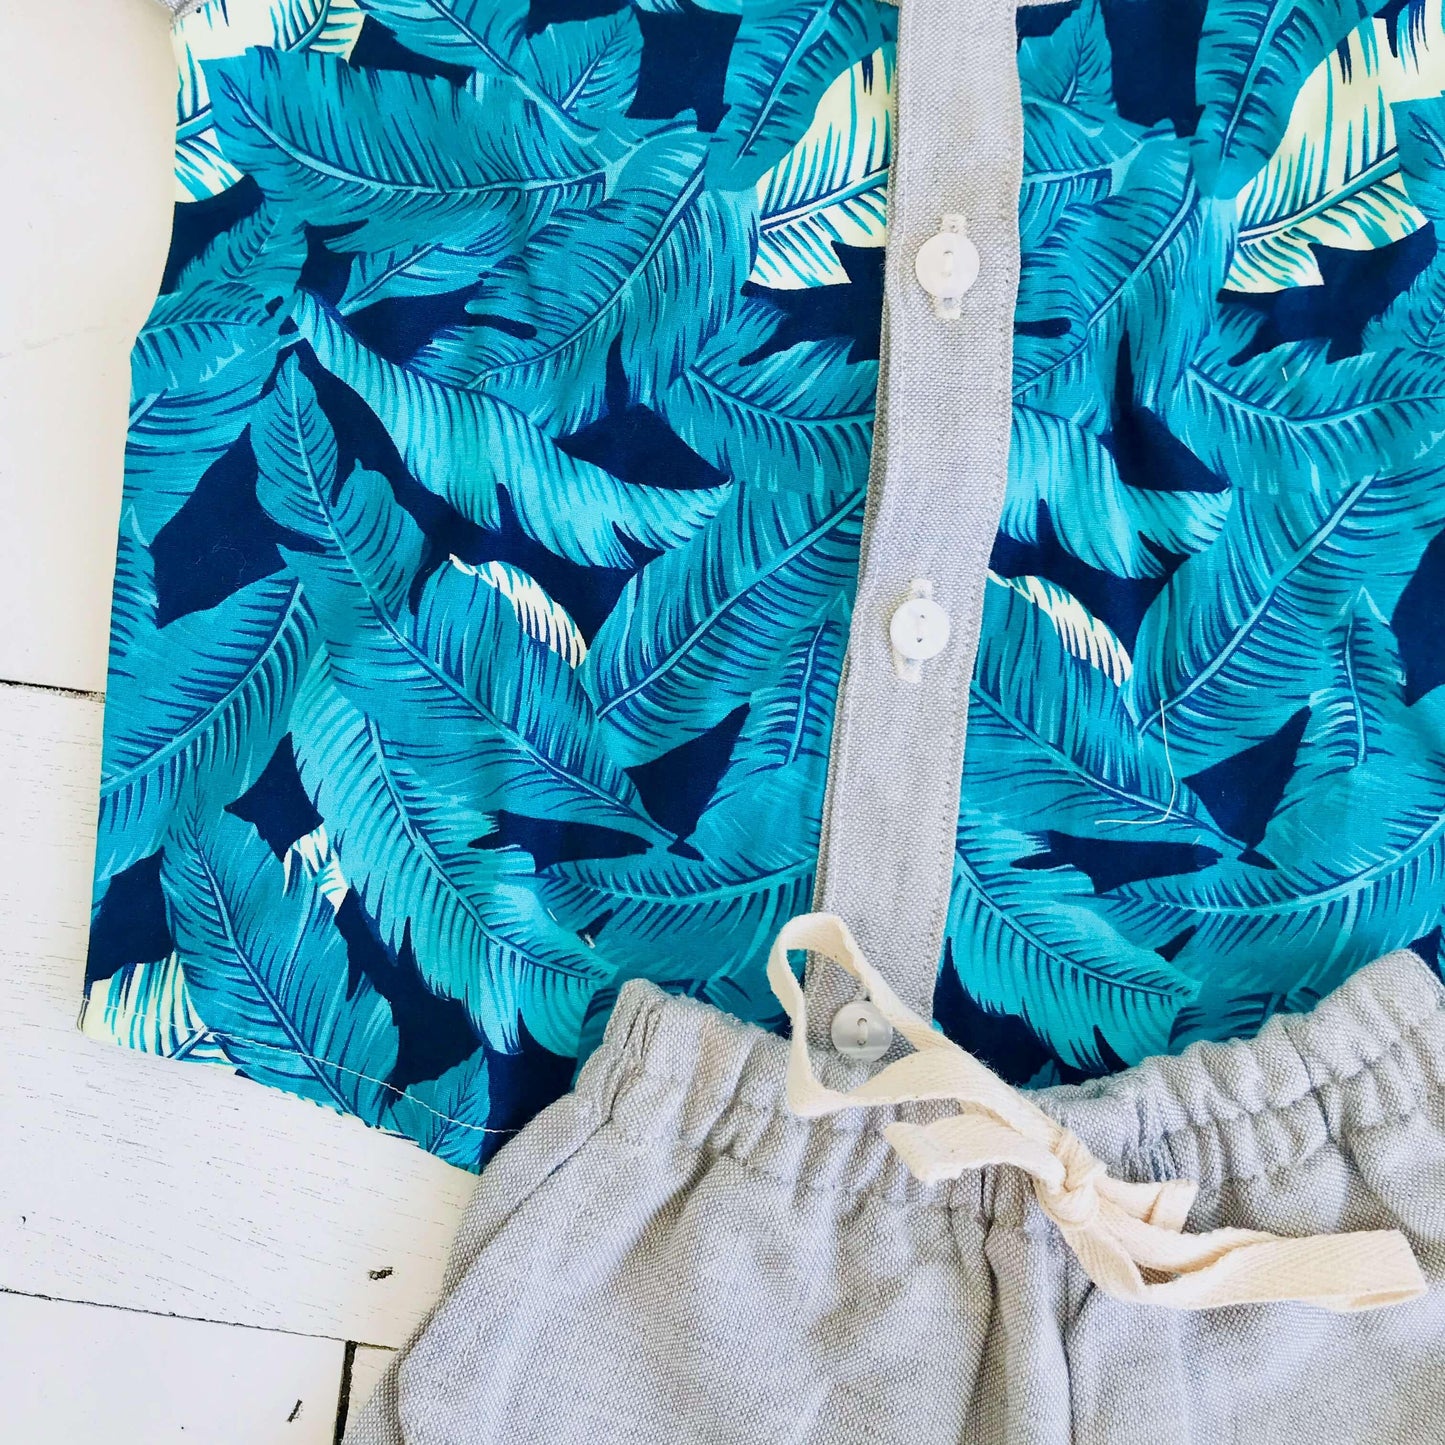 Birch Top & Shorts in Hawaiian Blue Leaves Print & Gray Linen - Lil' Tati